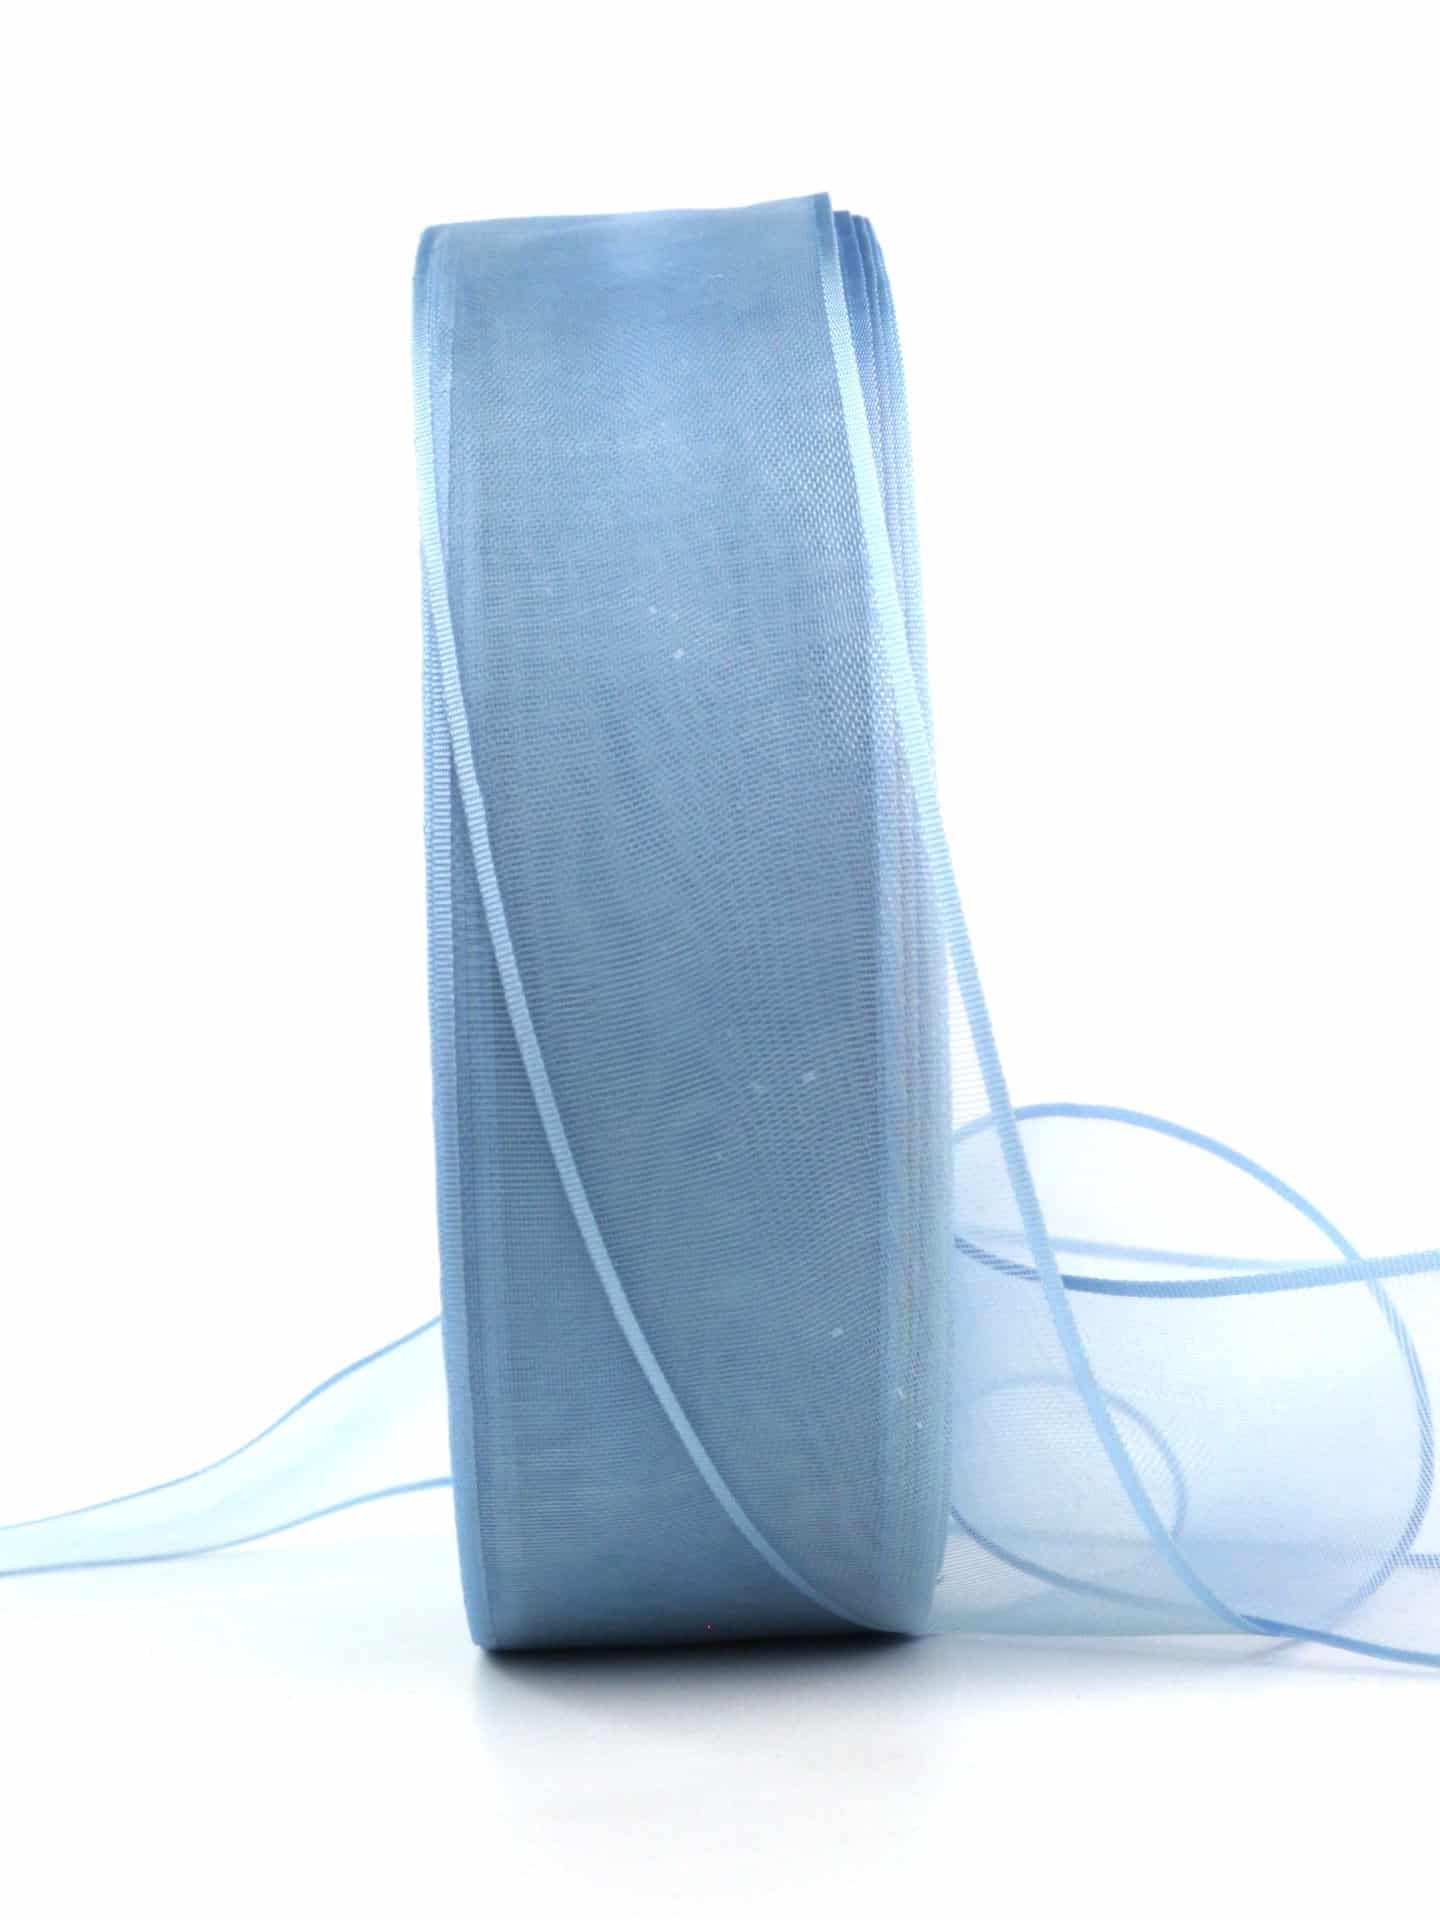 Organzaband mit Webkante, hellblau, 40 mm, 100 m Maxi-Rolle - sonderangebot, organzaband-einfarbig-organzabaender, organzabaender